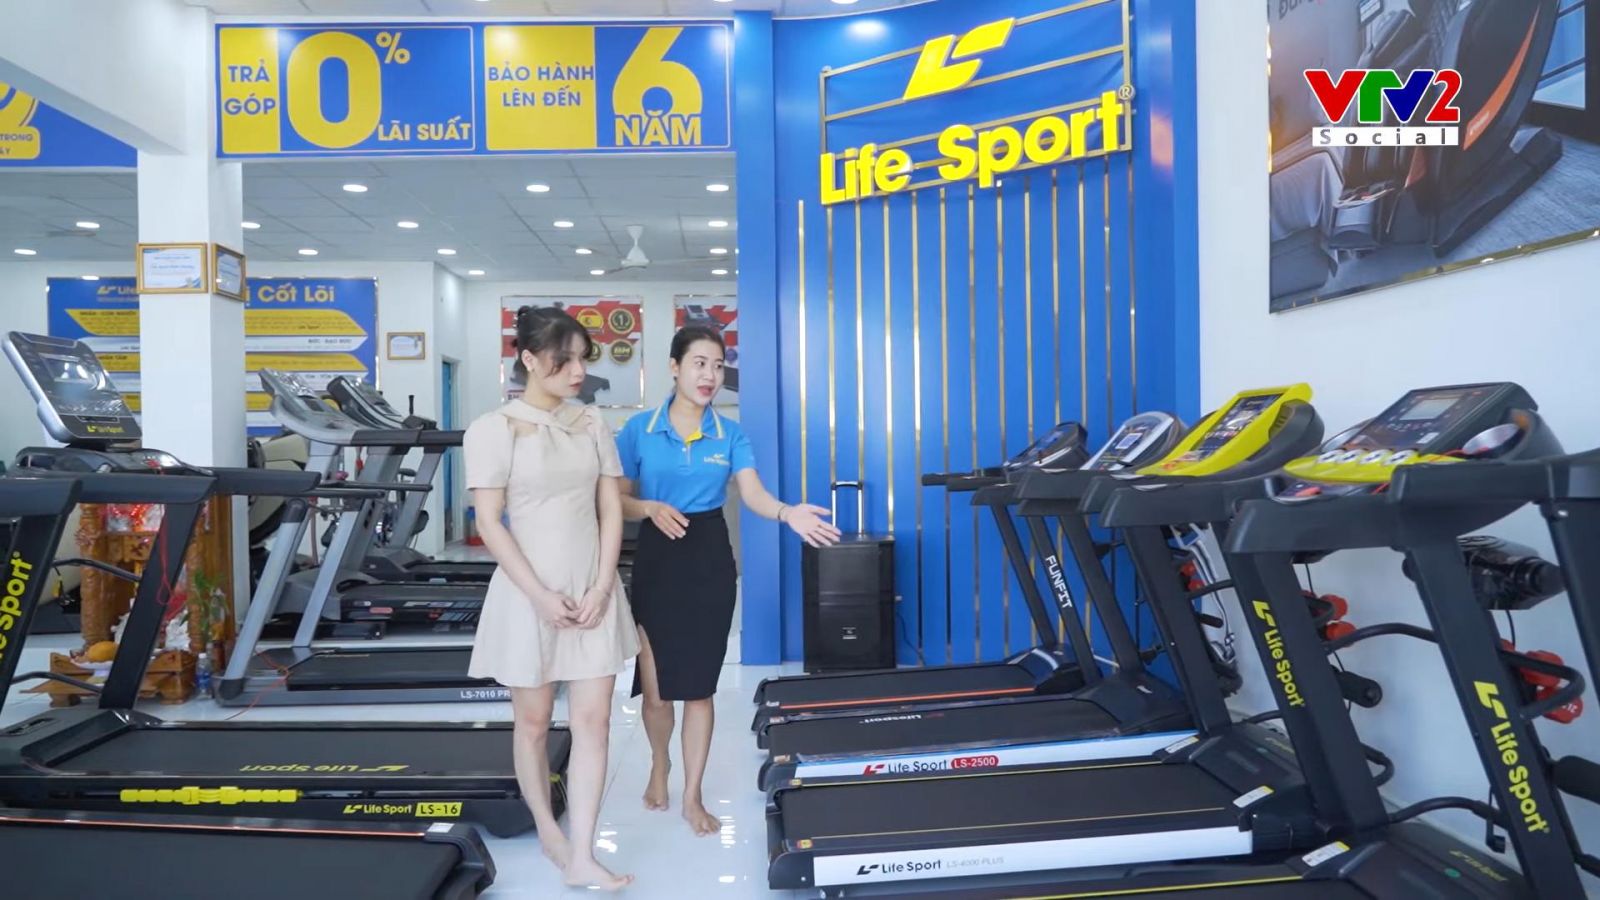 Địa chỉ bán máy chạy bộ tại Lâm Đồng chính hãng uy tín